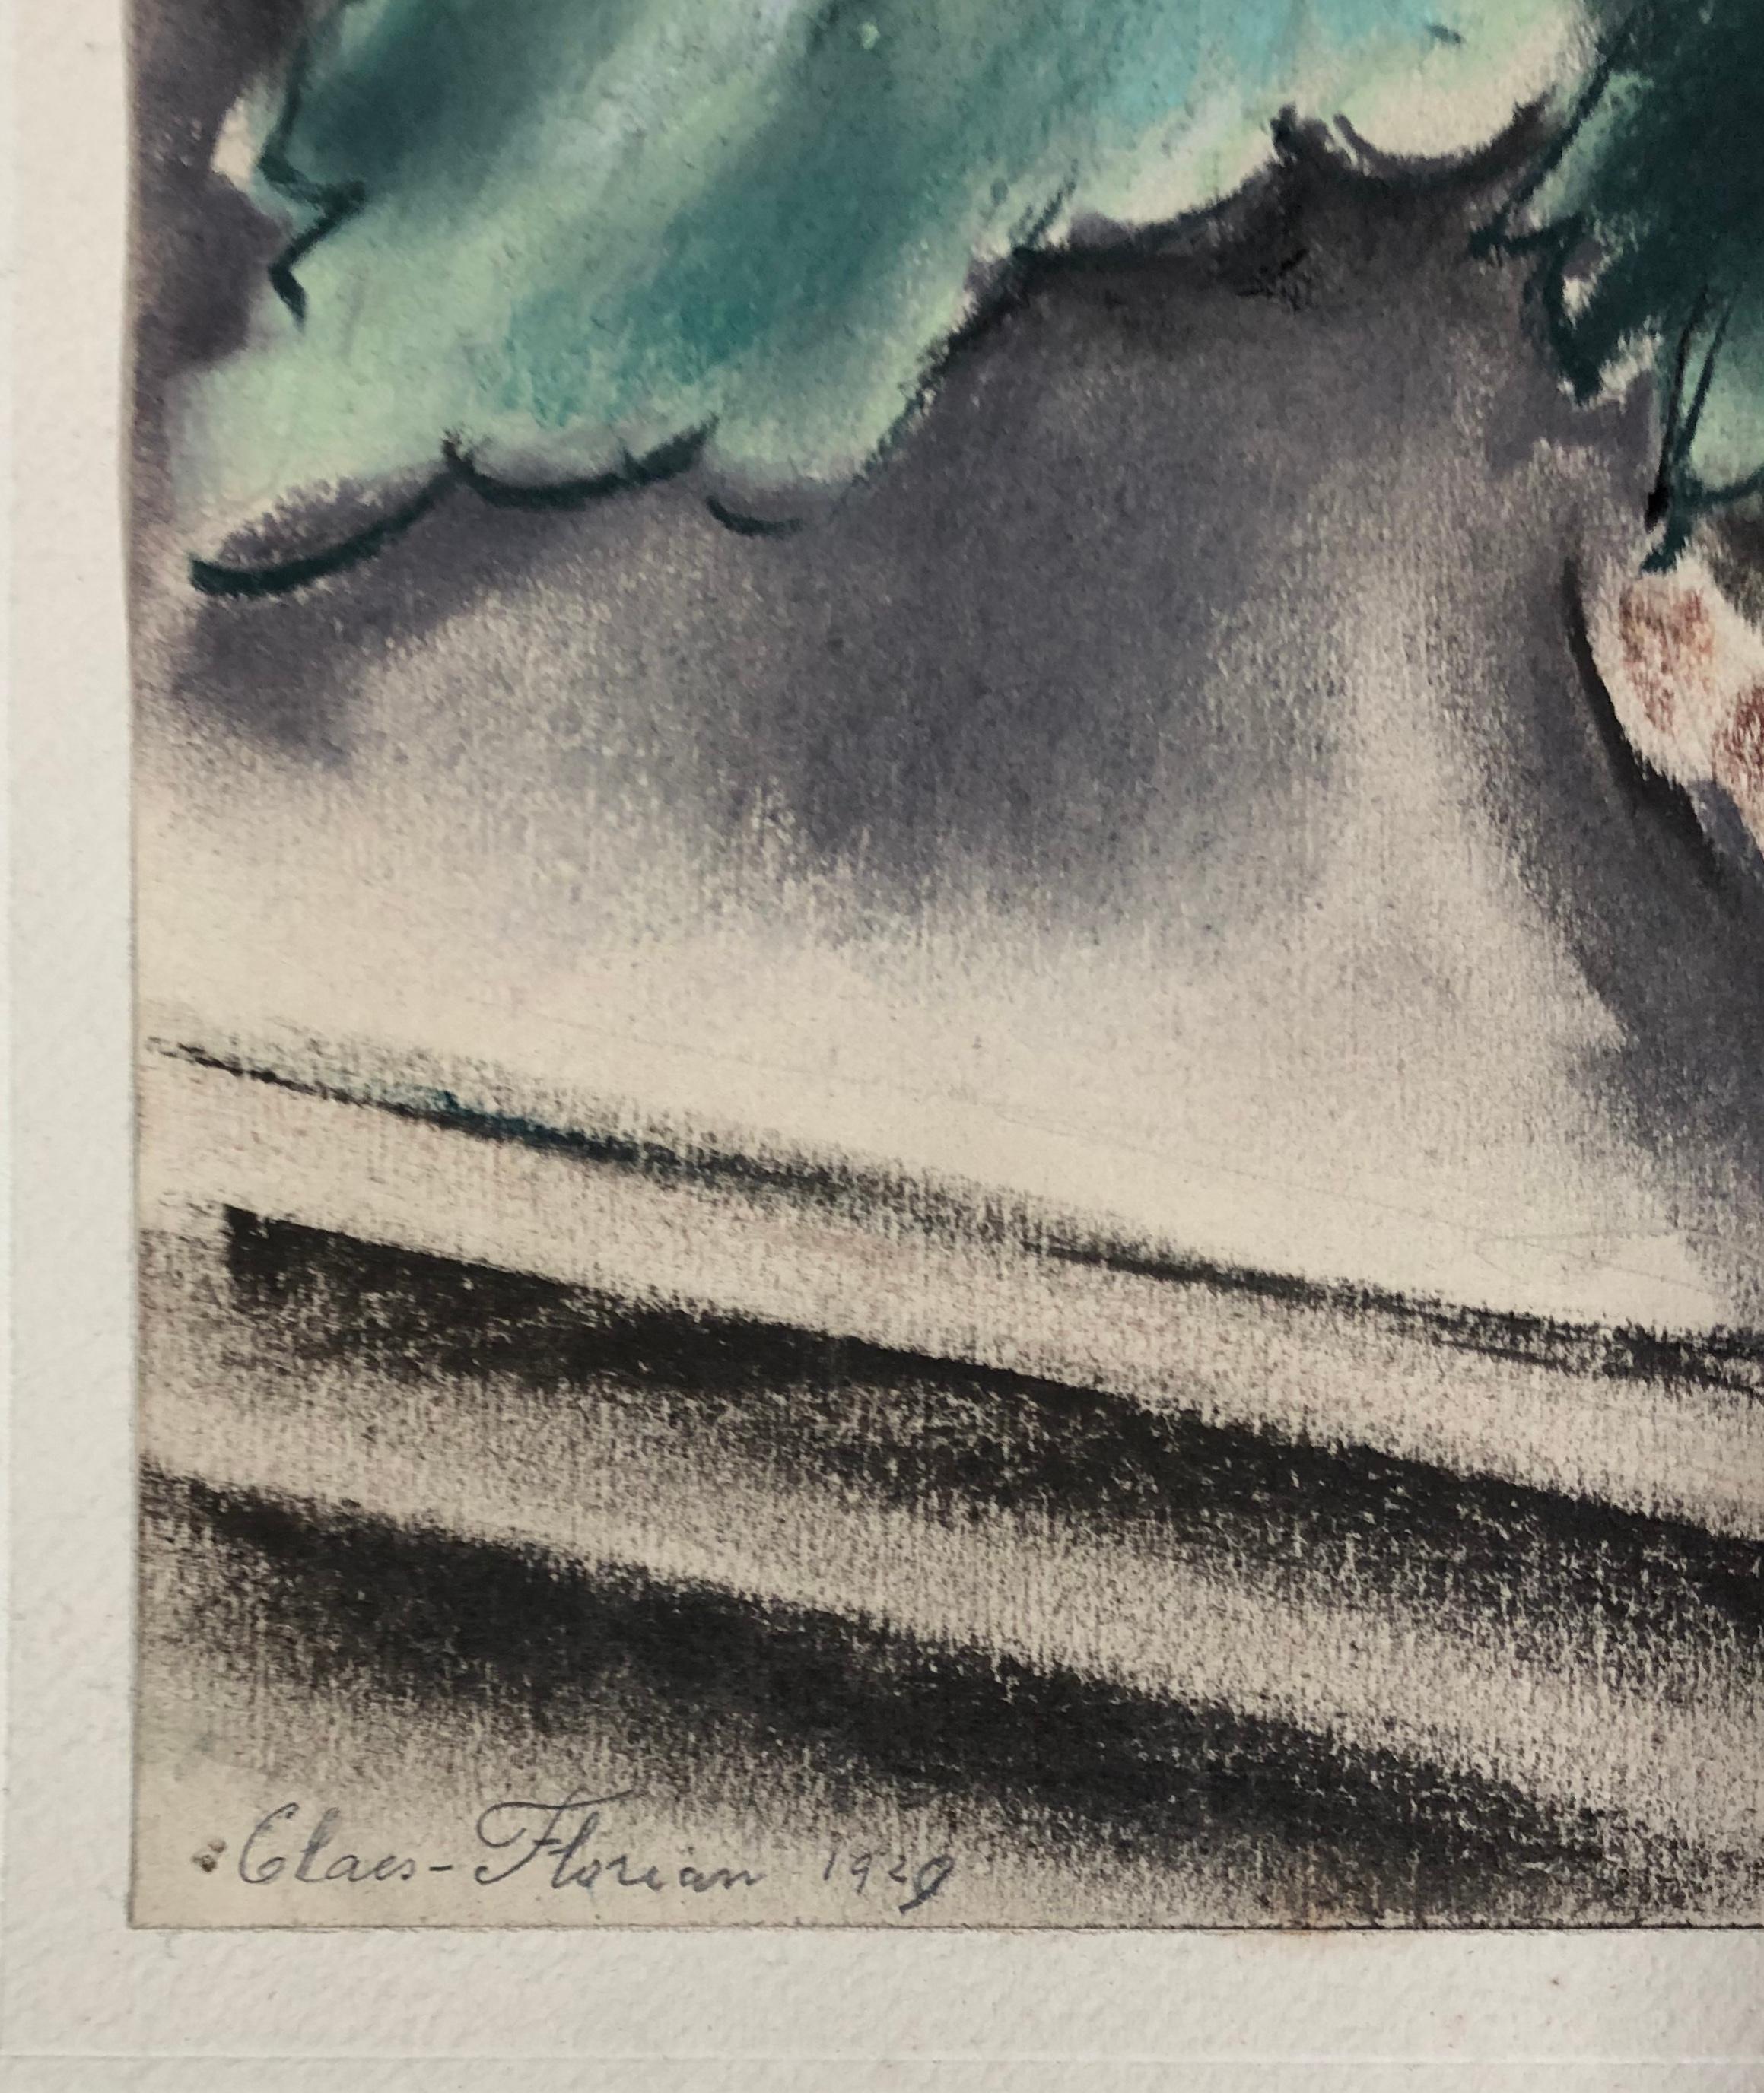 ES-THOBOIS ALBERT. Lebendiges Kunstleben. Pastellfarbener Pastell. Signiert und datiert 1929. (Kubismus), Art, von Albert Claes-Thobois